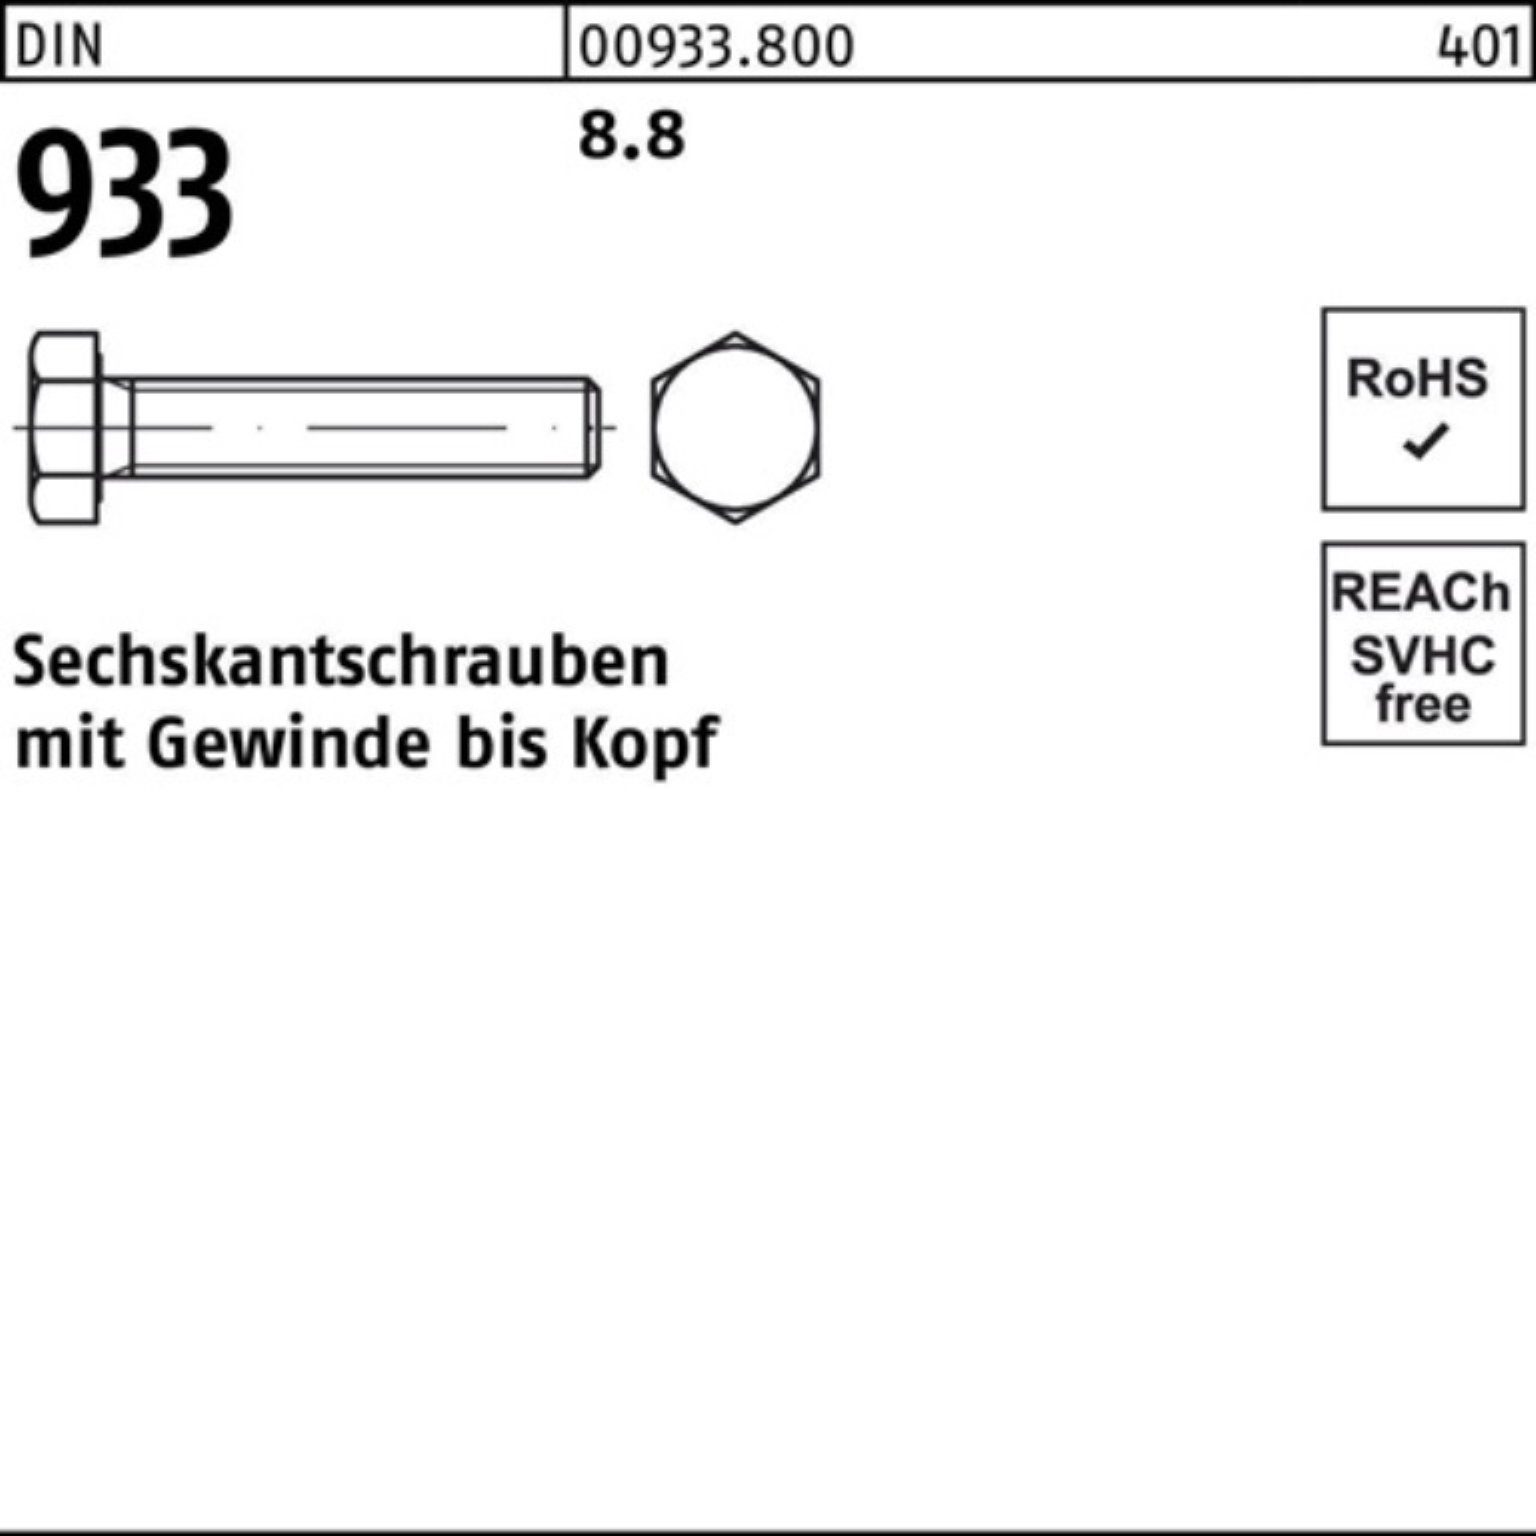 Reyher Sechskantschraube Pack 933 933 500 Sechskantschraube VG Stück 500er 8.8 DIN 22 M6x DIN